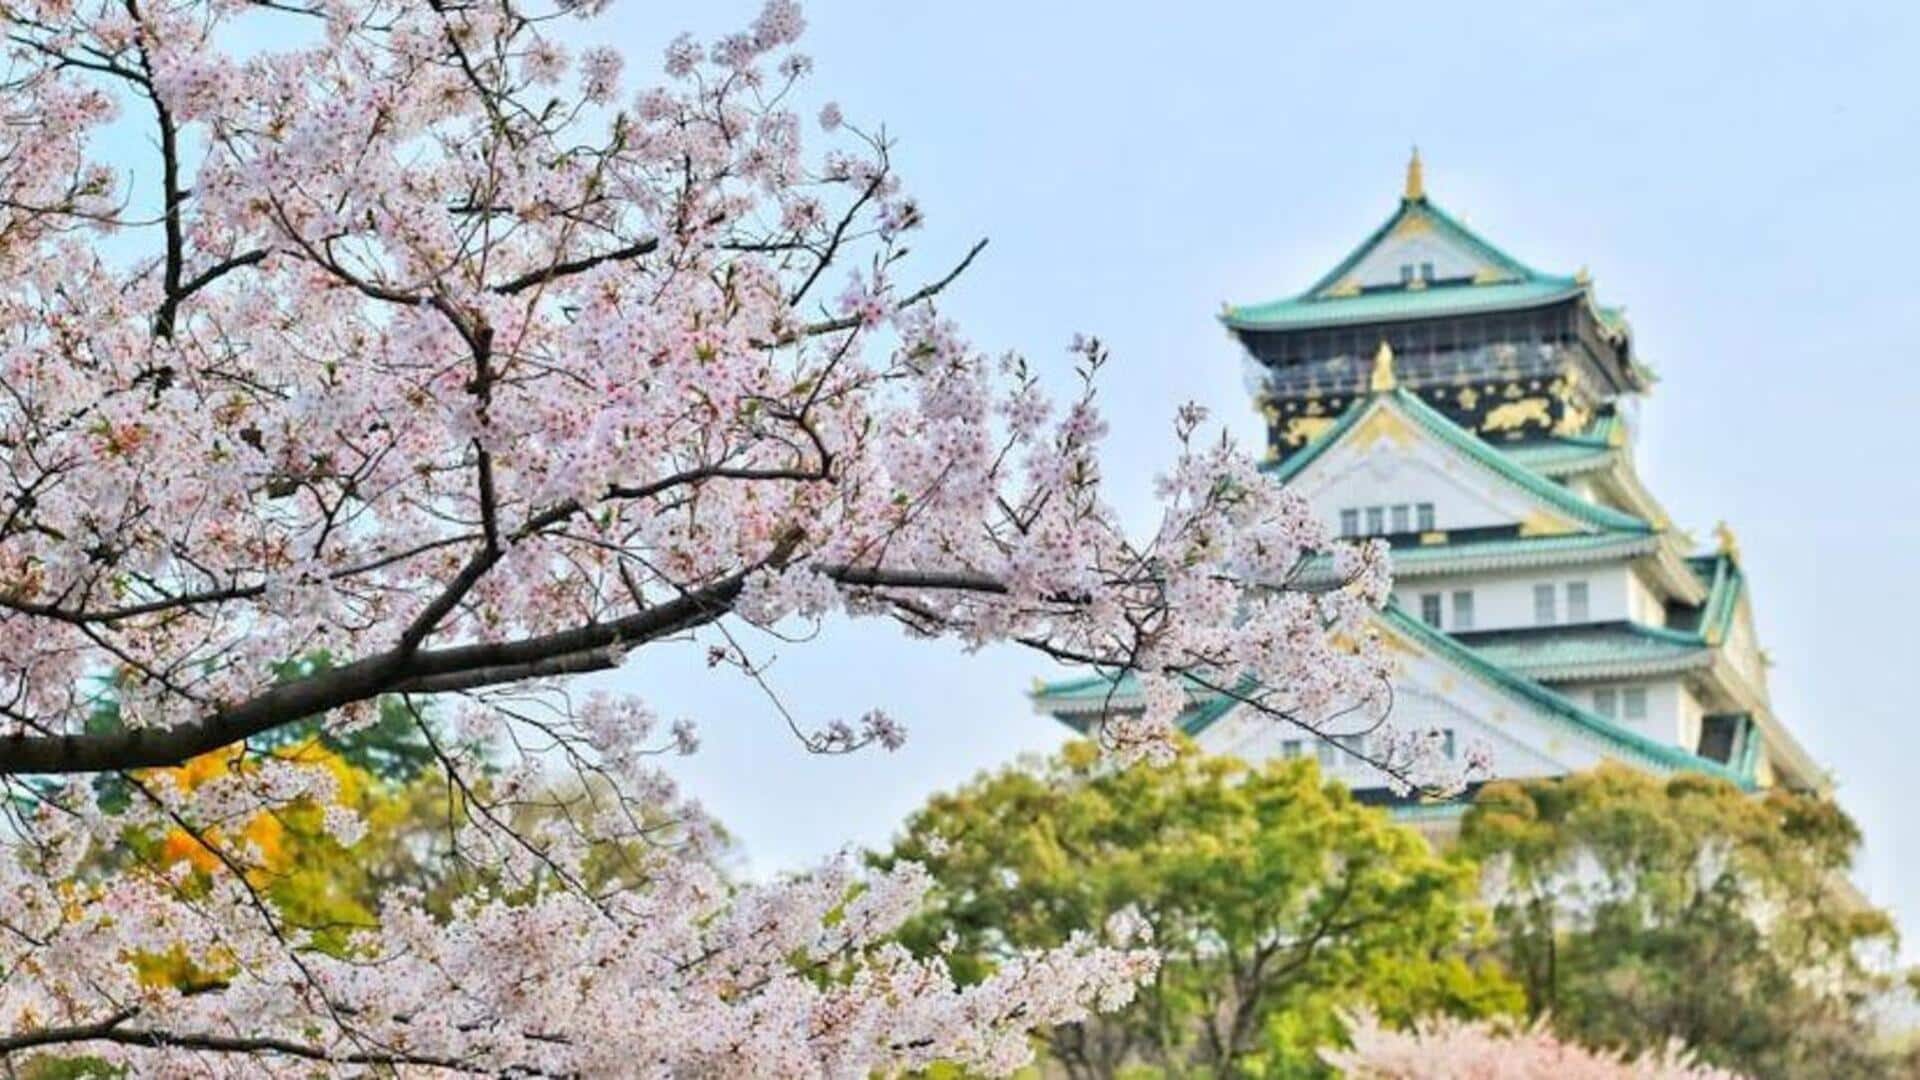 Saksikan Hirosaki, negeri ajaib bunga sakura di Jepang dengan panduan perjalanan ini 